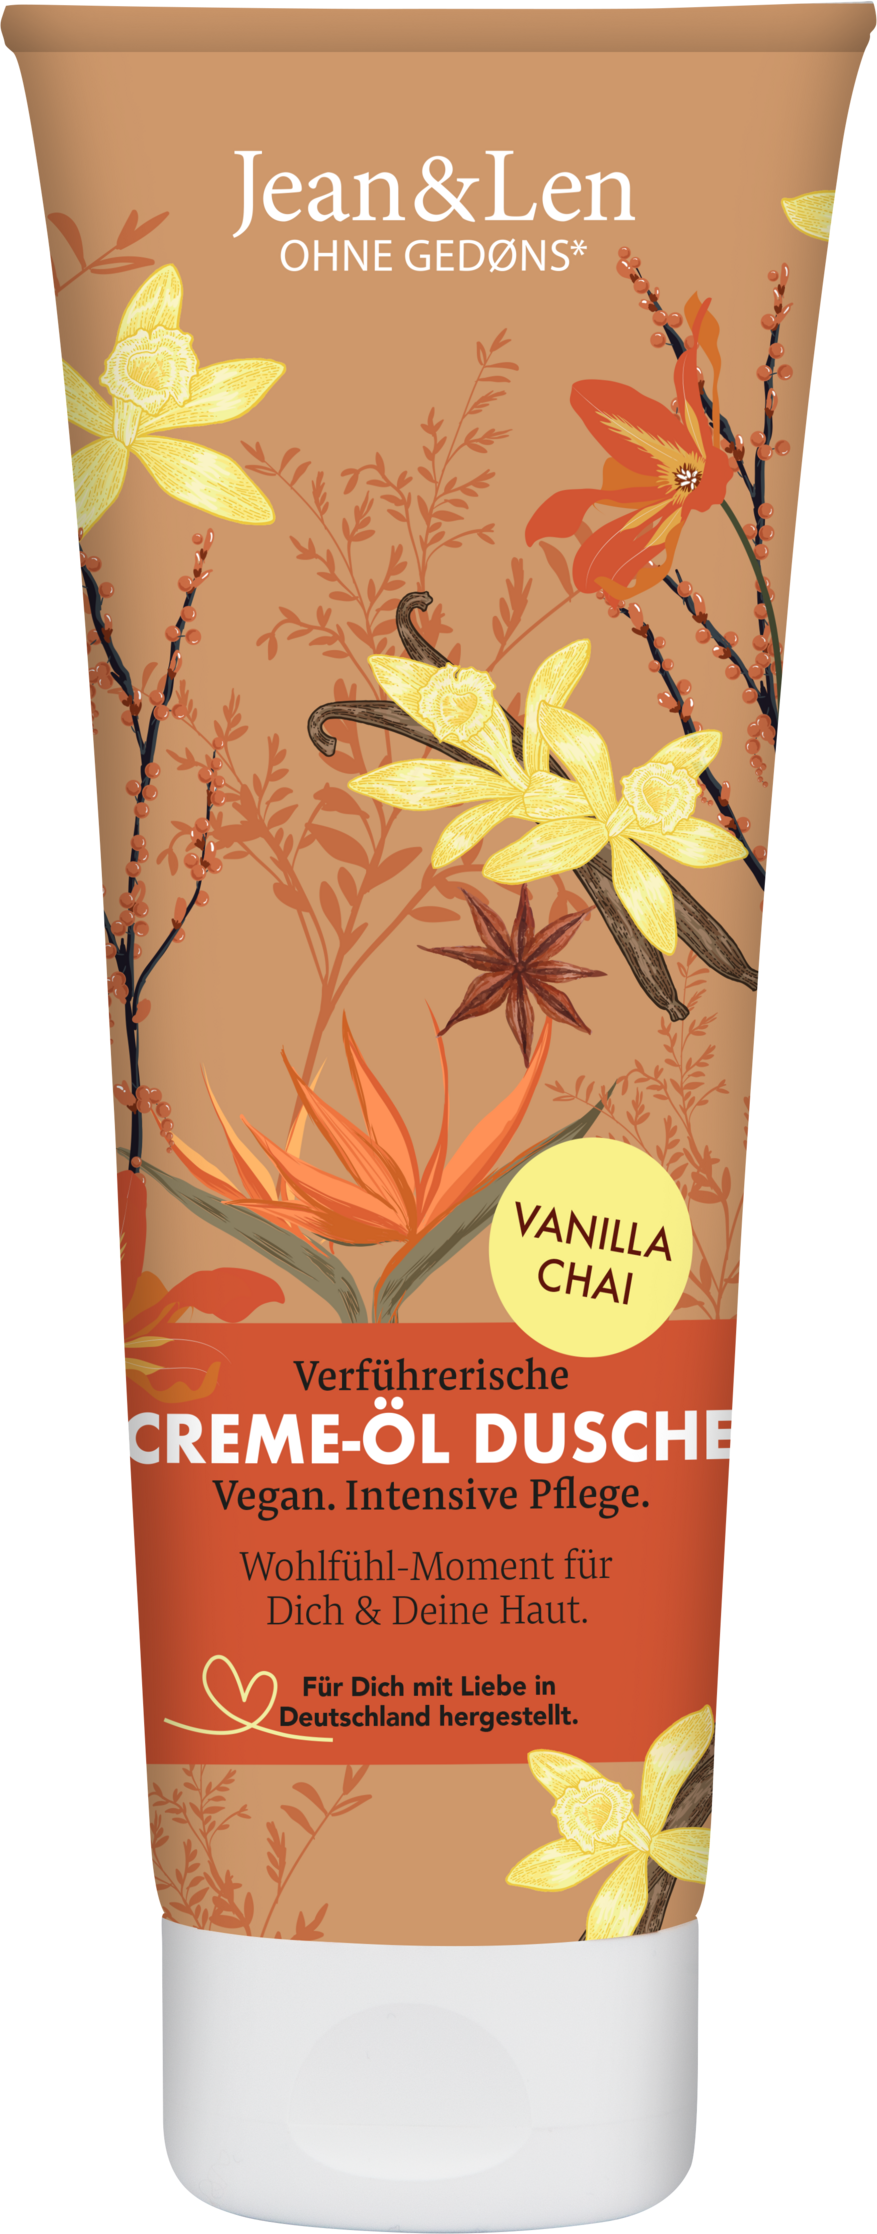 Seductive cream-oil shower vanilla chai